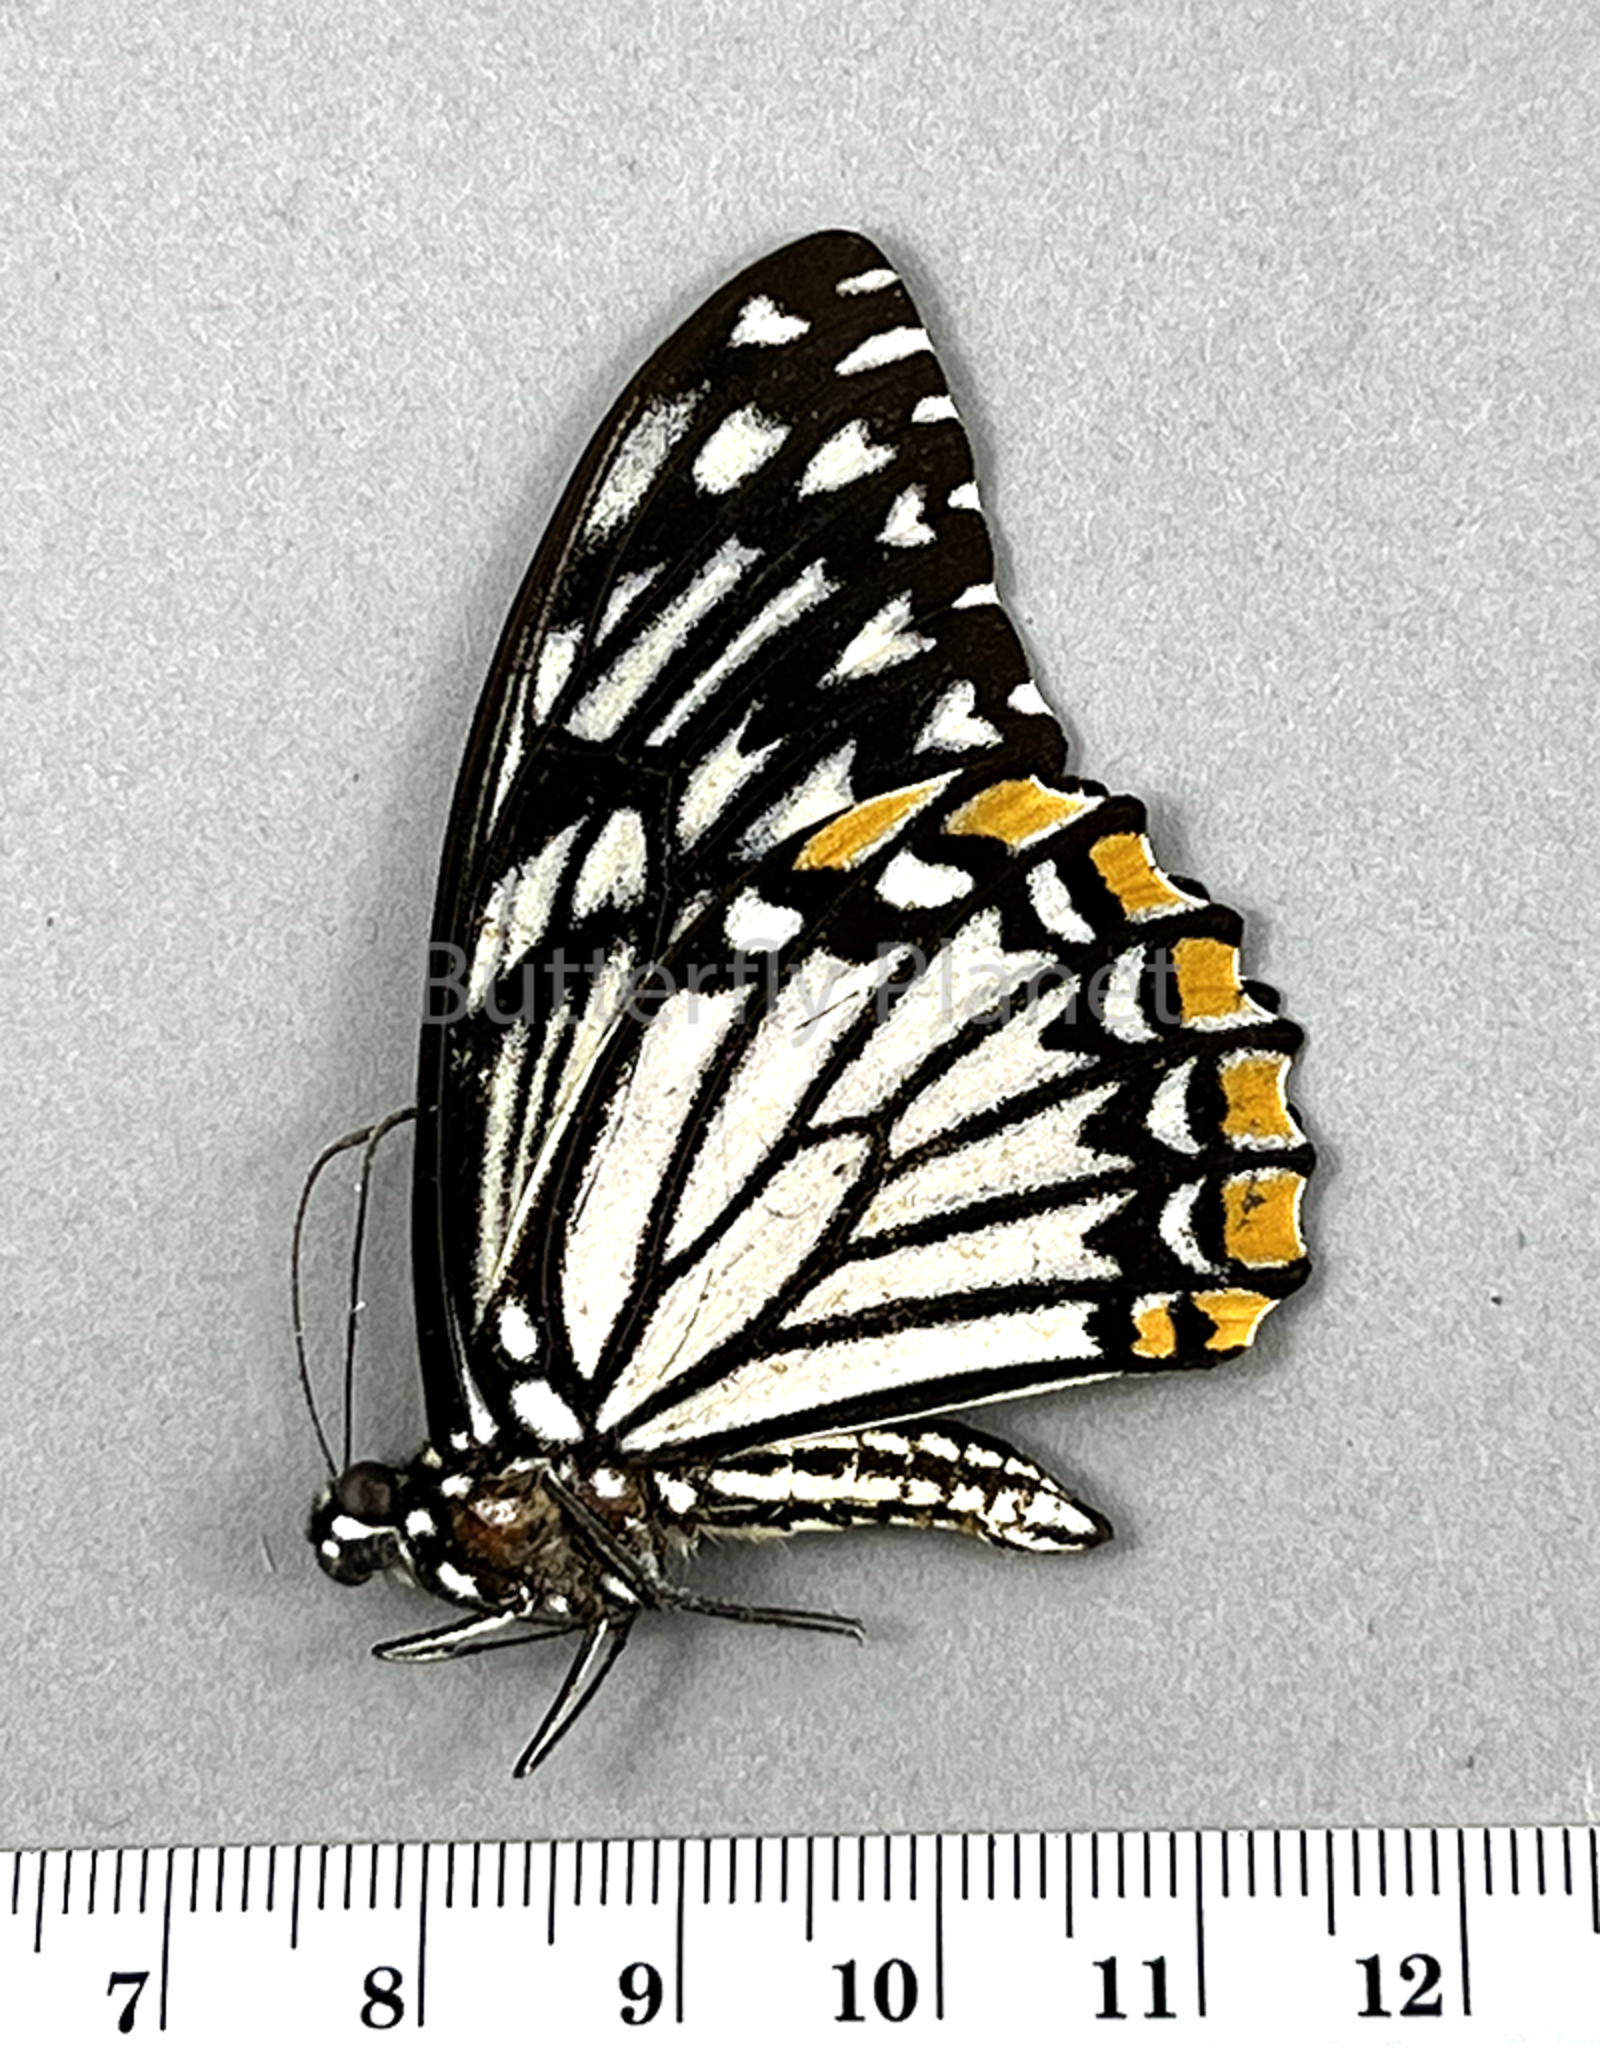 Chilasa clytia lankeswara white form M A2 Sri Lanka